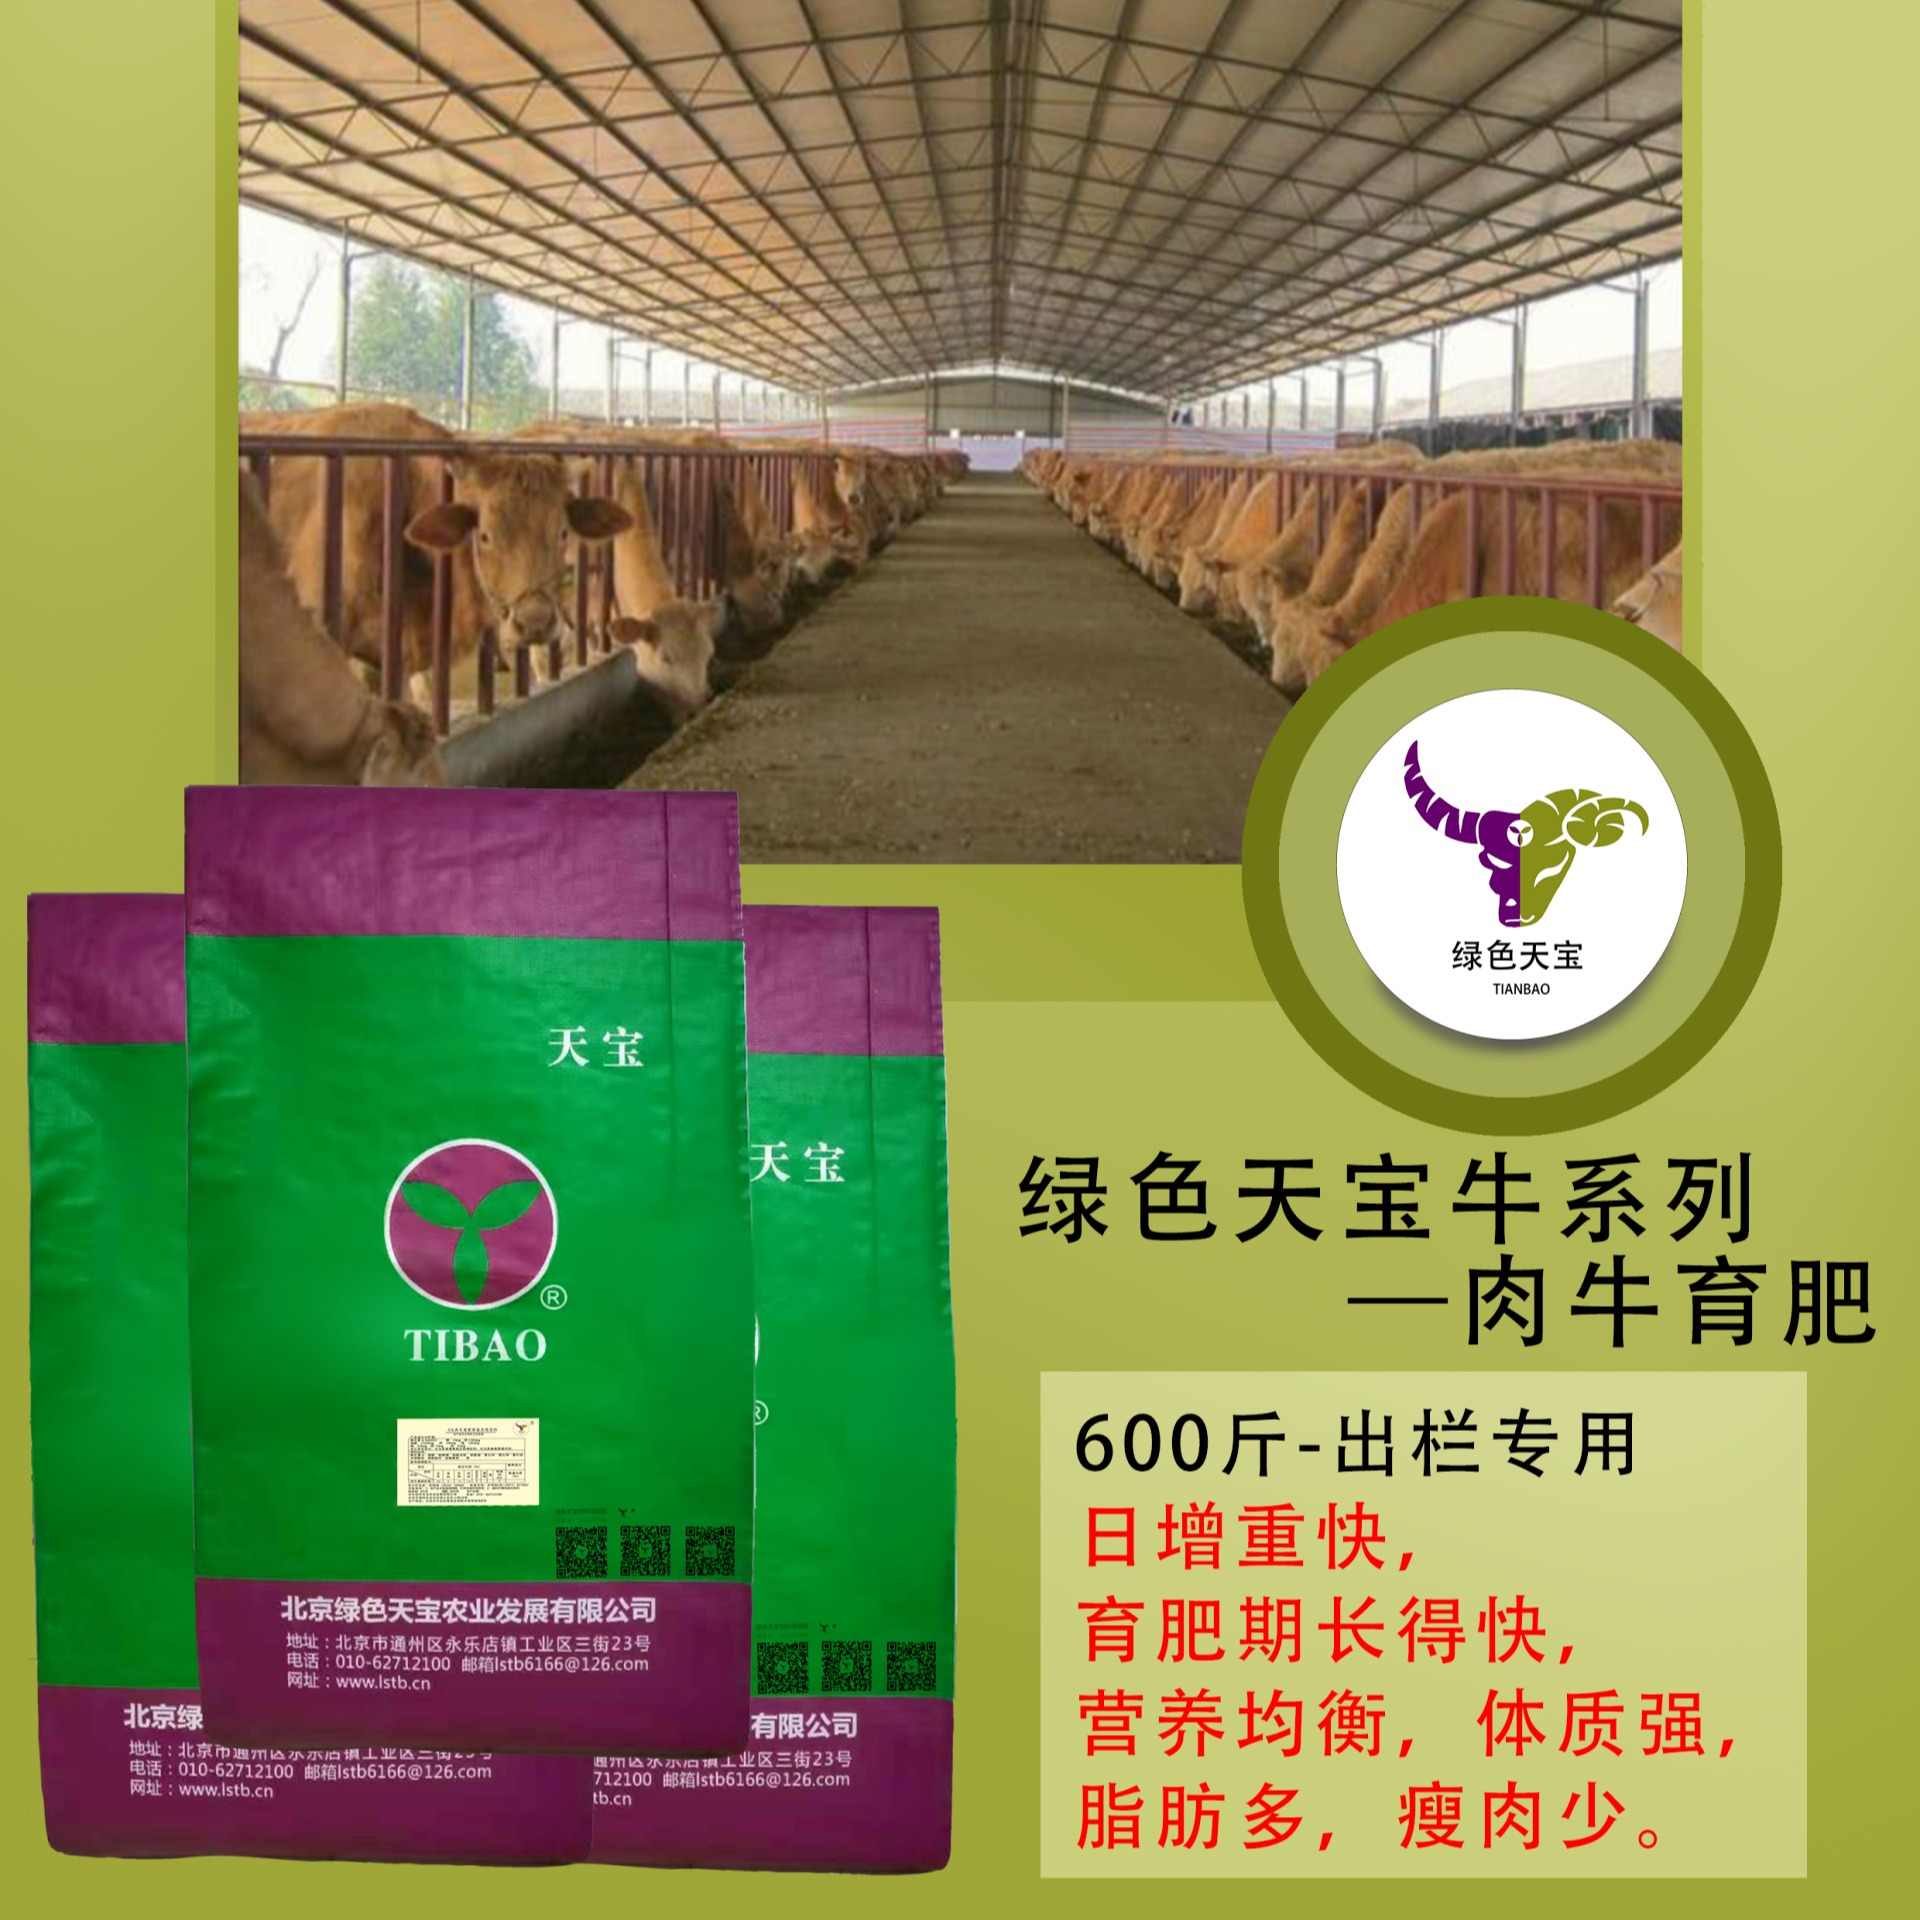 5%肉牛育肥期复合预混料  育肥牛育肥期间的饲料配方比例   快速育肥